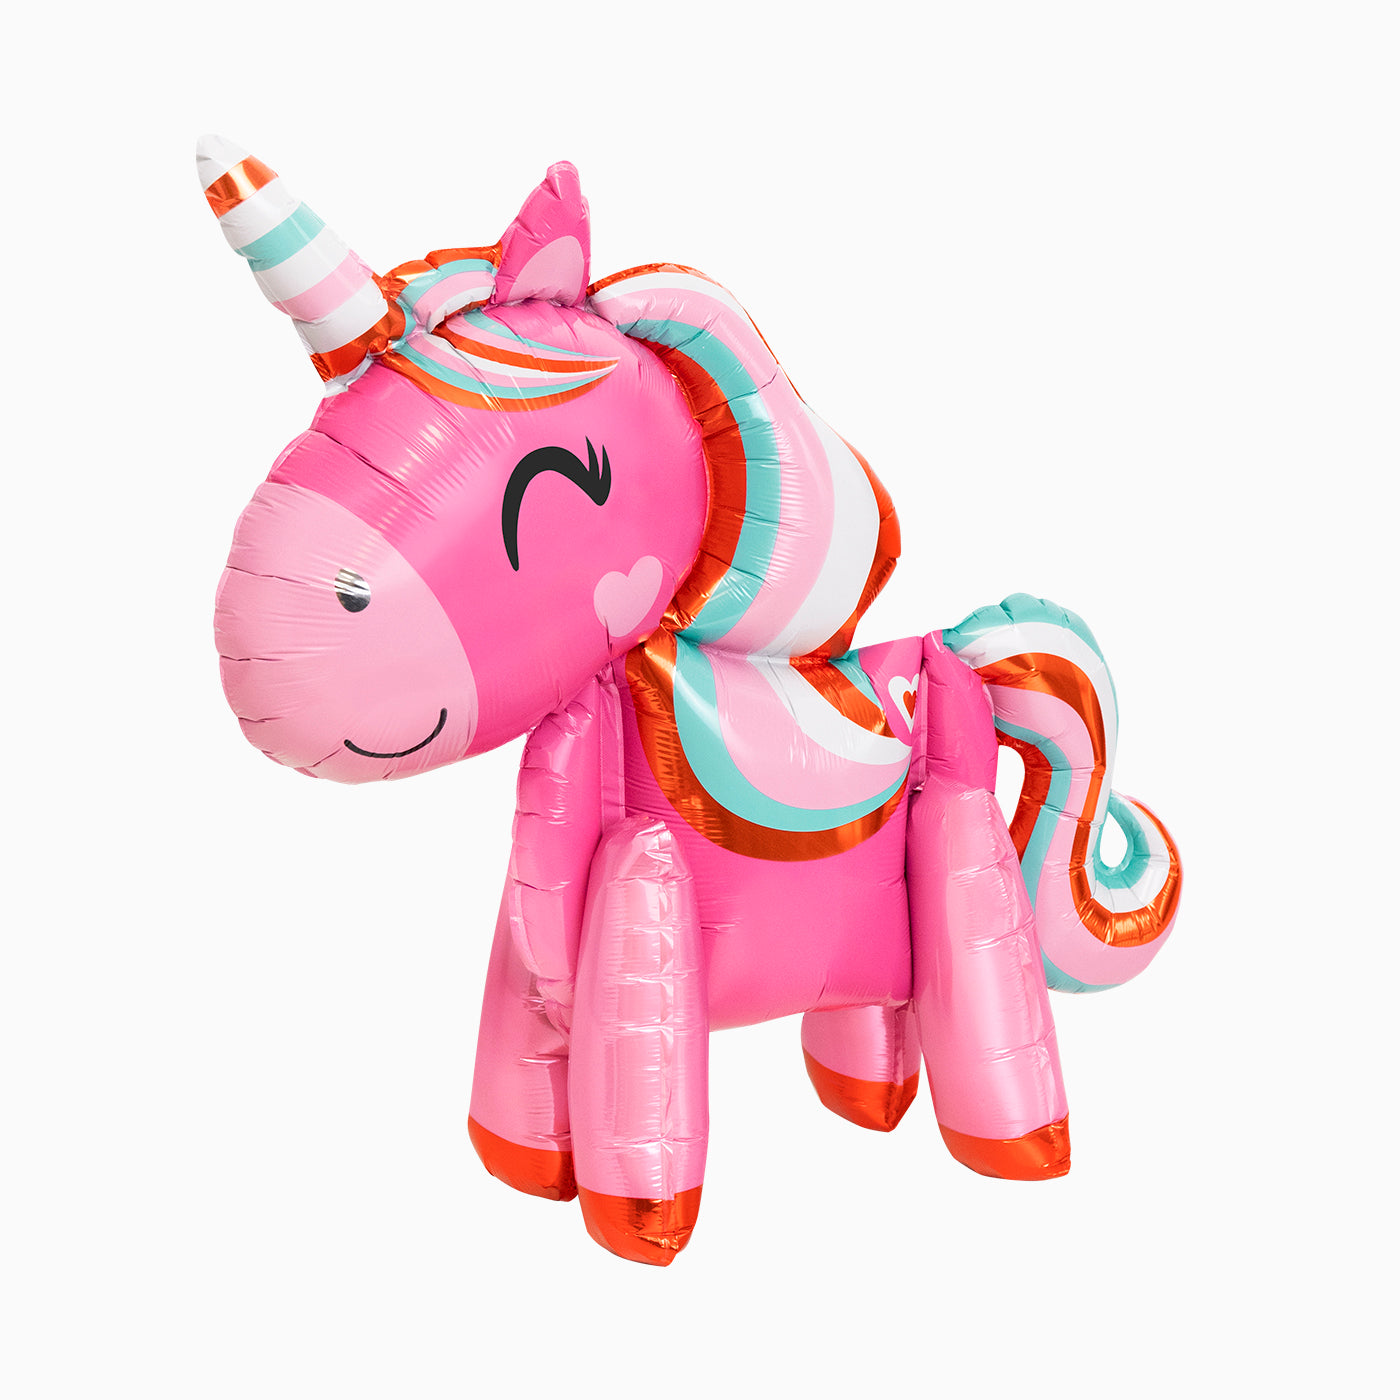 3D pink unicorn balloon